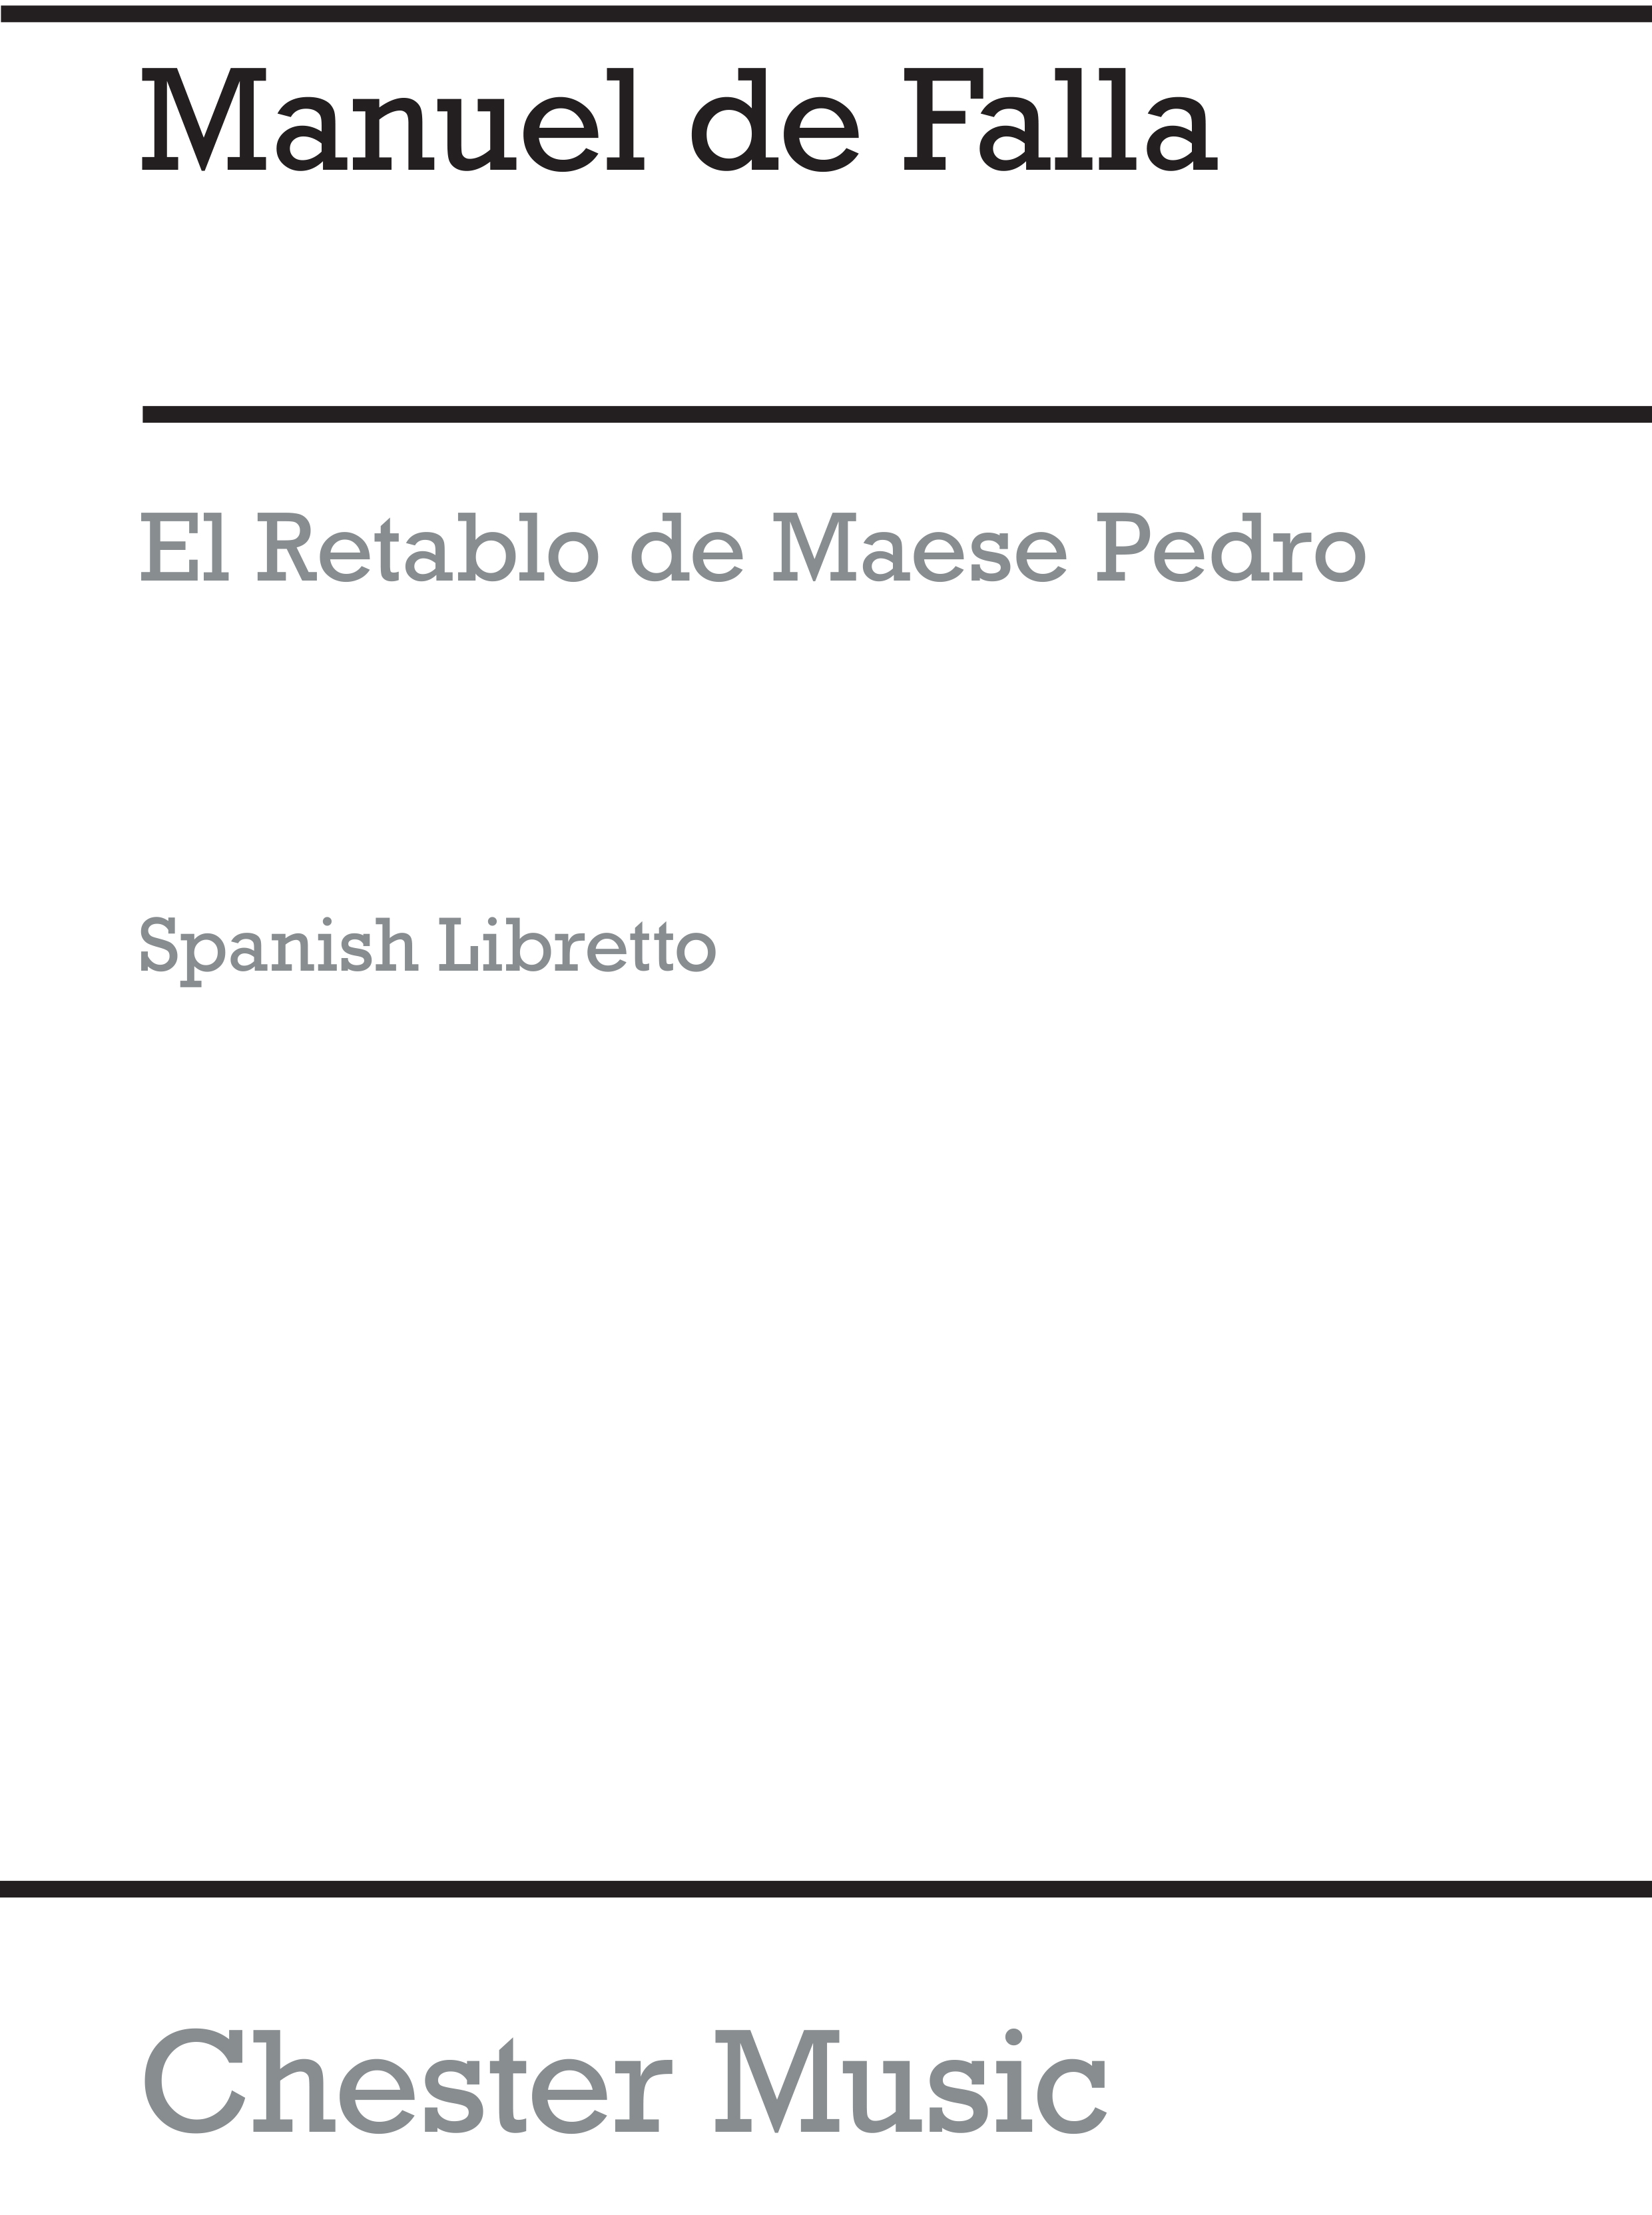 Manuel de Falla: El Retablo De Maese Pedro (Spanish Edition): Orchestra: